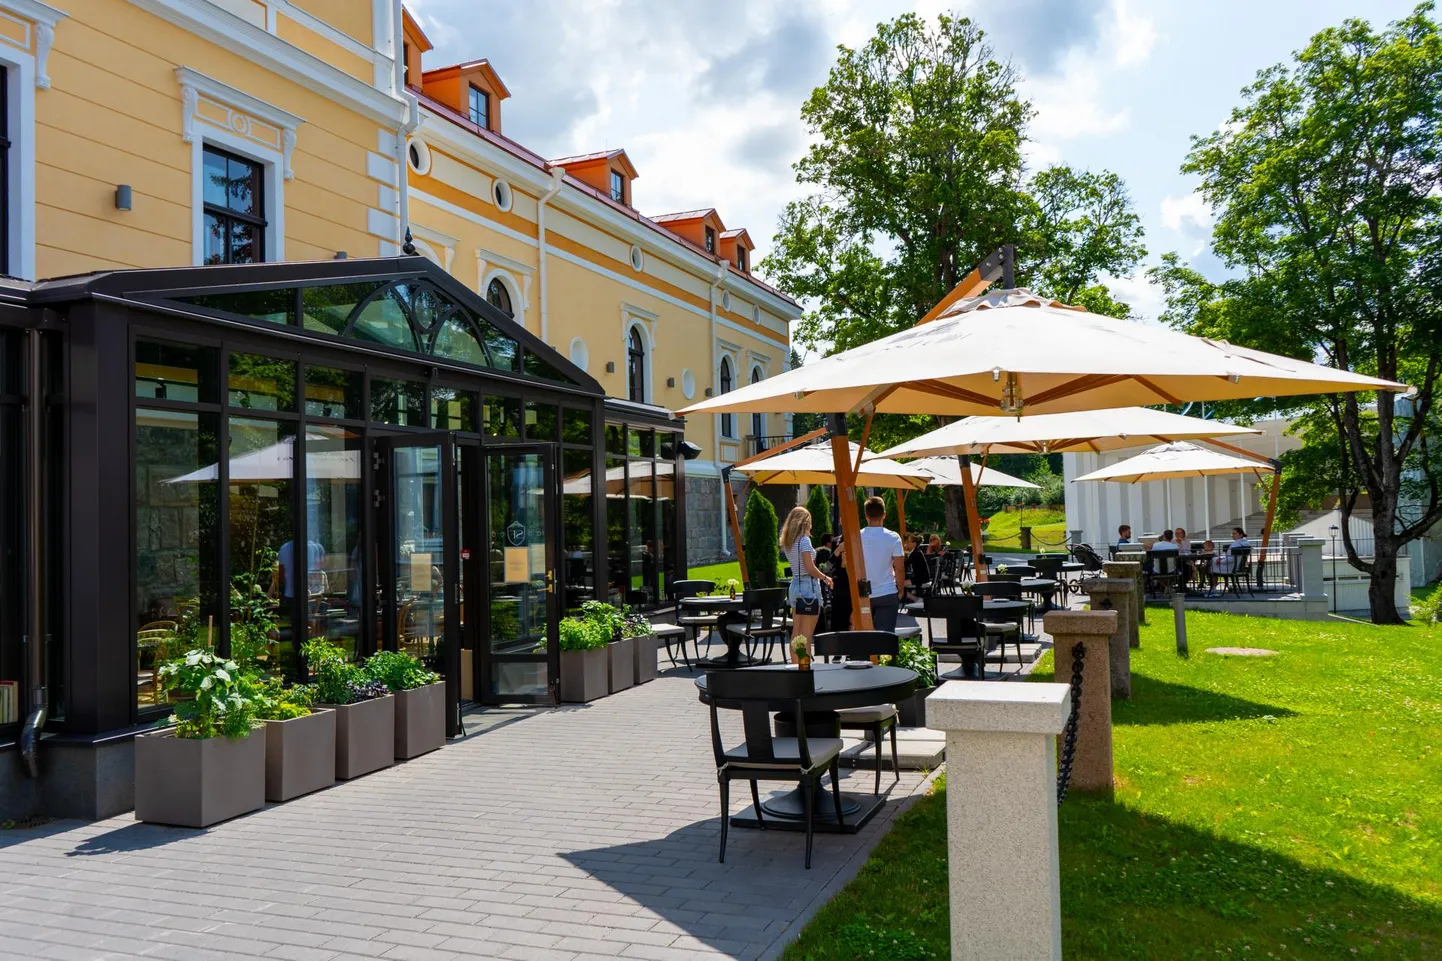 Vanas Viljandi mõisas tegutsevas kohvikus Novell on võimalik toitu nautida ka vabas õhus.